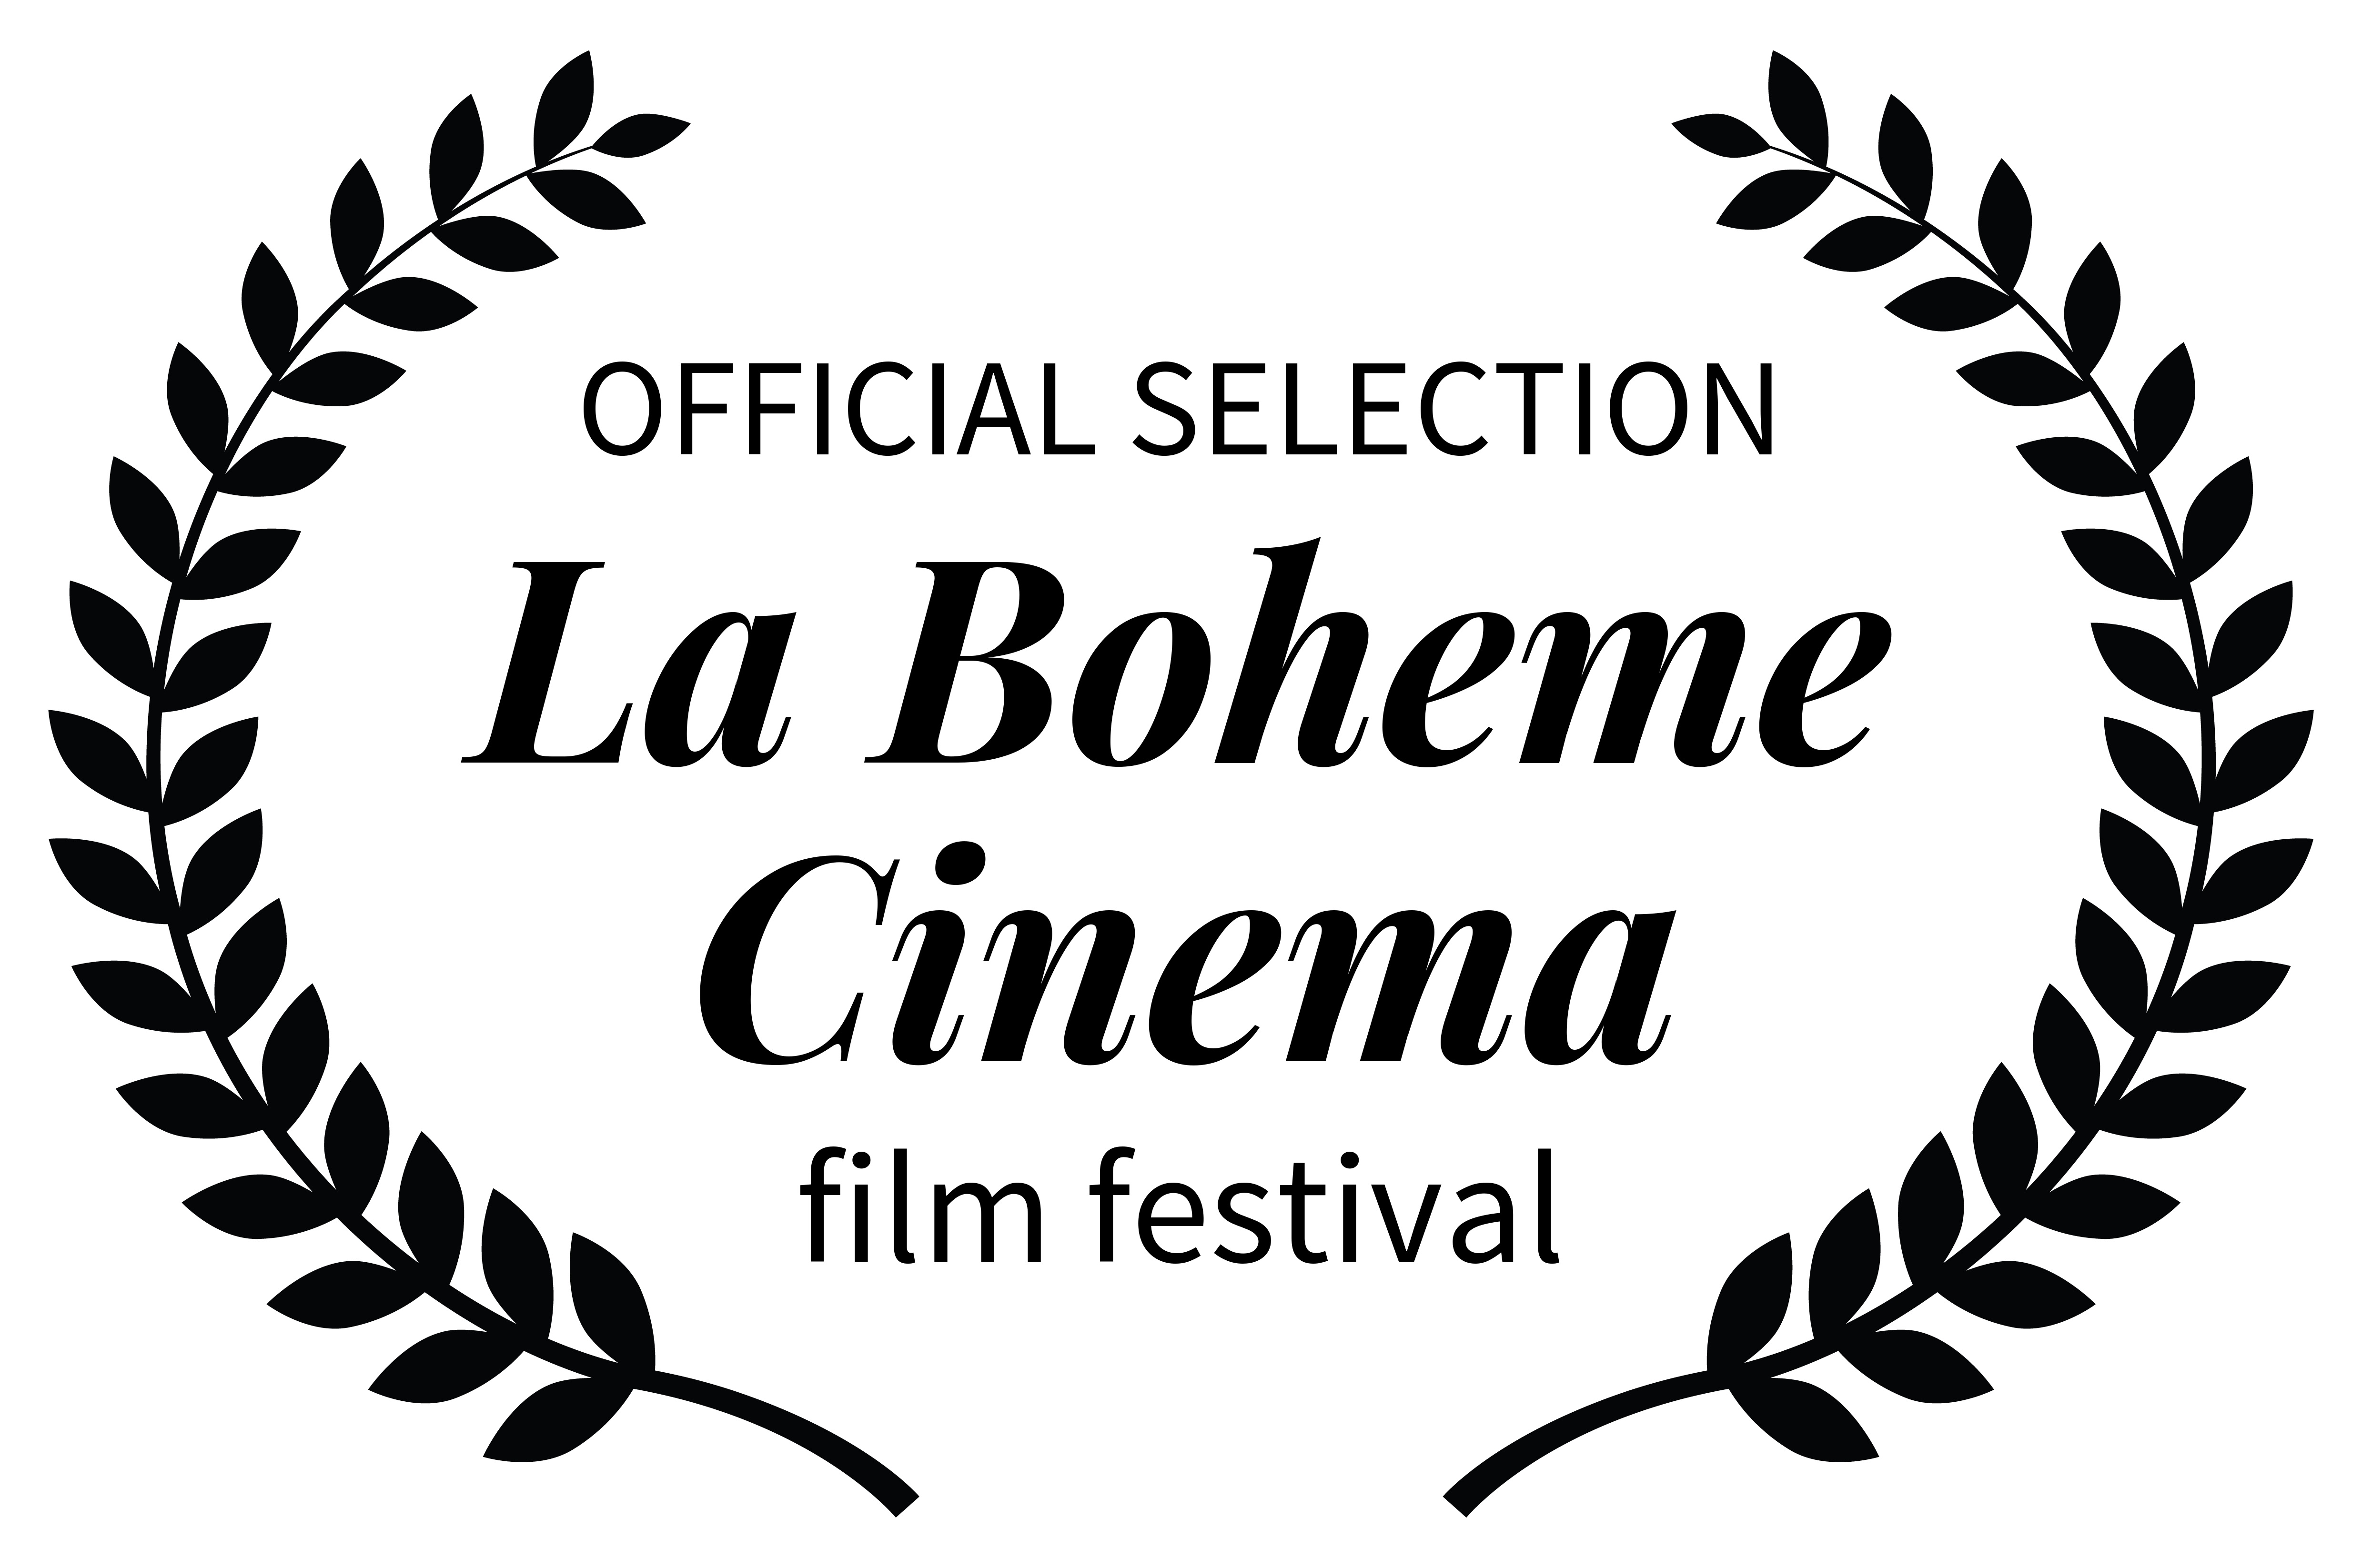 La Boheme Cinema 2023 включен в госперечень международных кинофестивалей